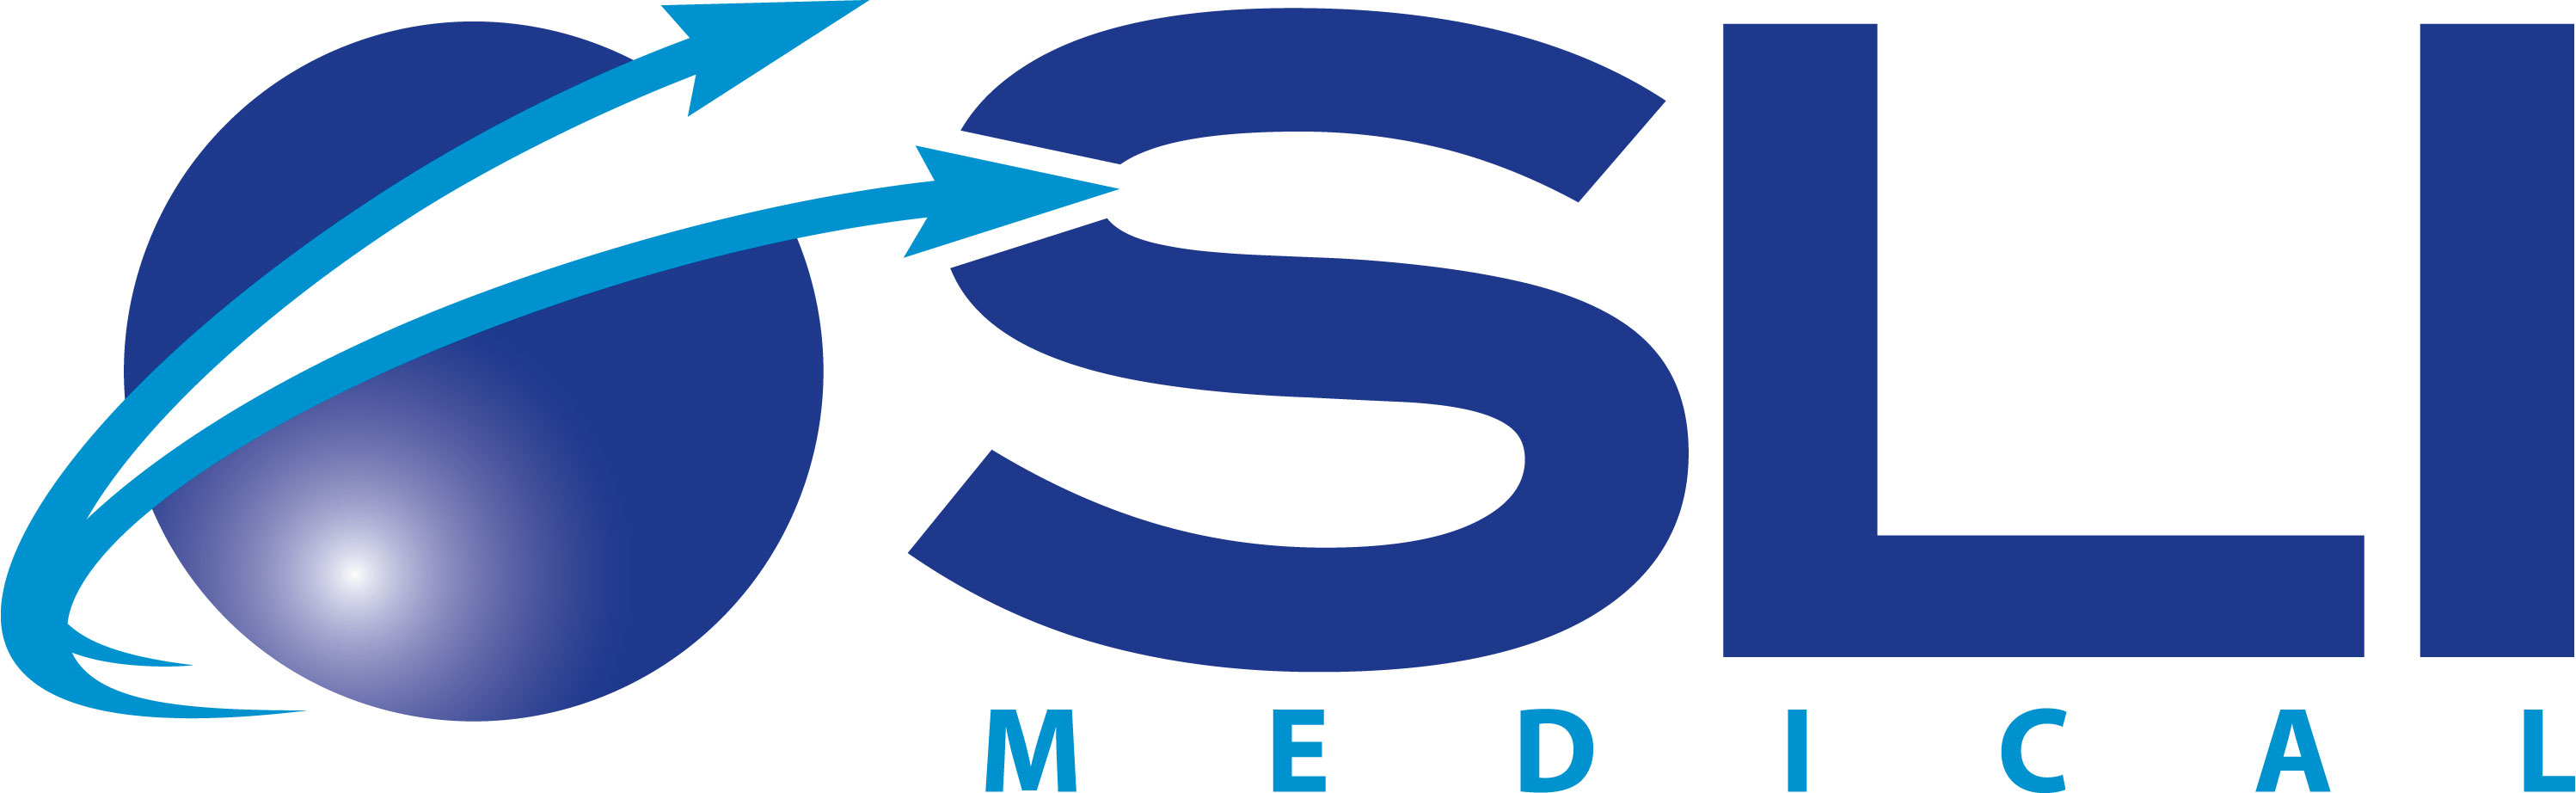 https://www.slimedical.com/media/porto/newsletter/logo/default/SLI-Medical_LOGO.jpg